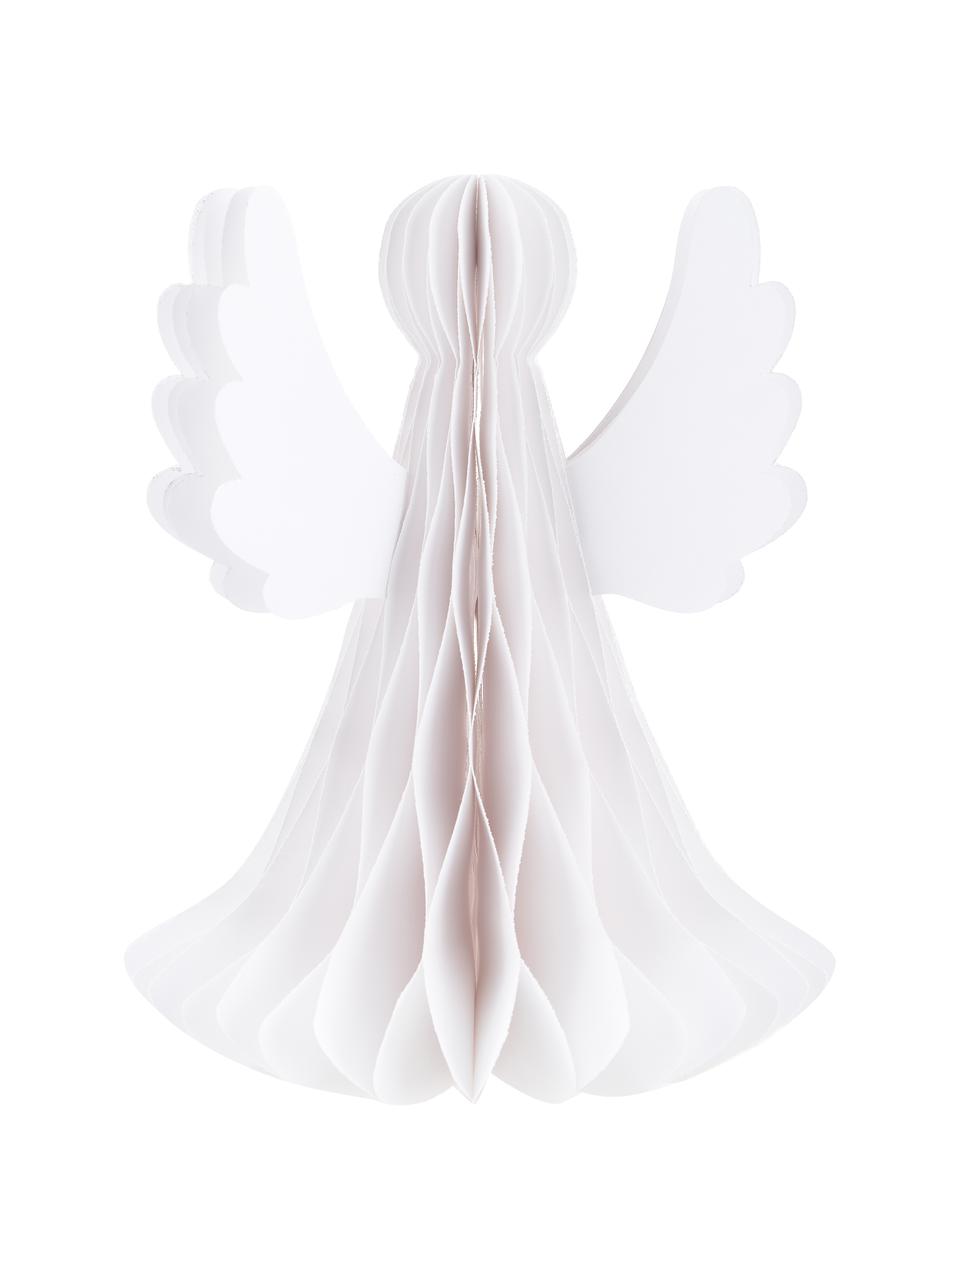 Dekoracja Angel, Papier, Biały, Ø 21 x W 27 cm